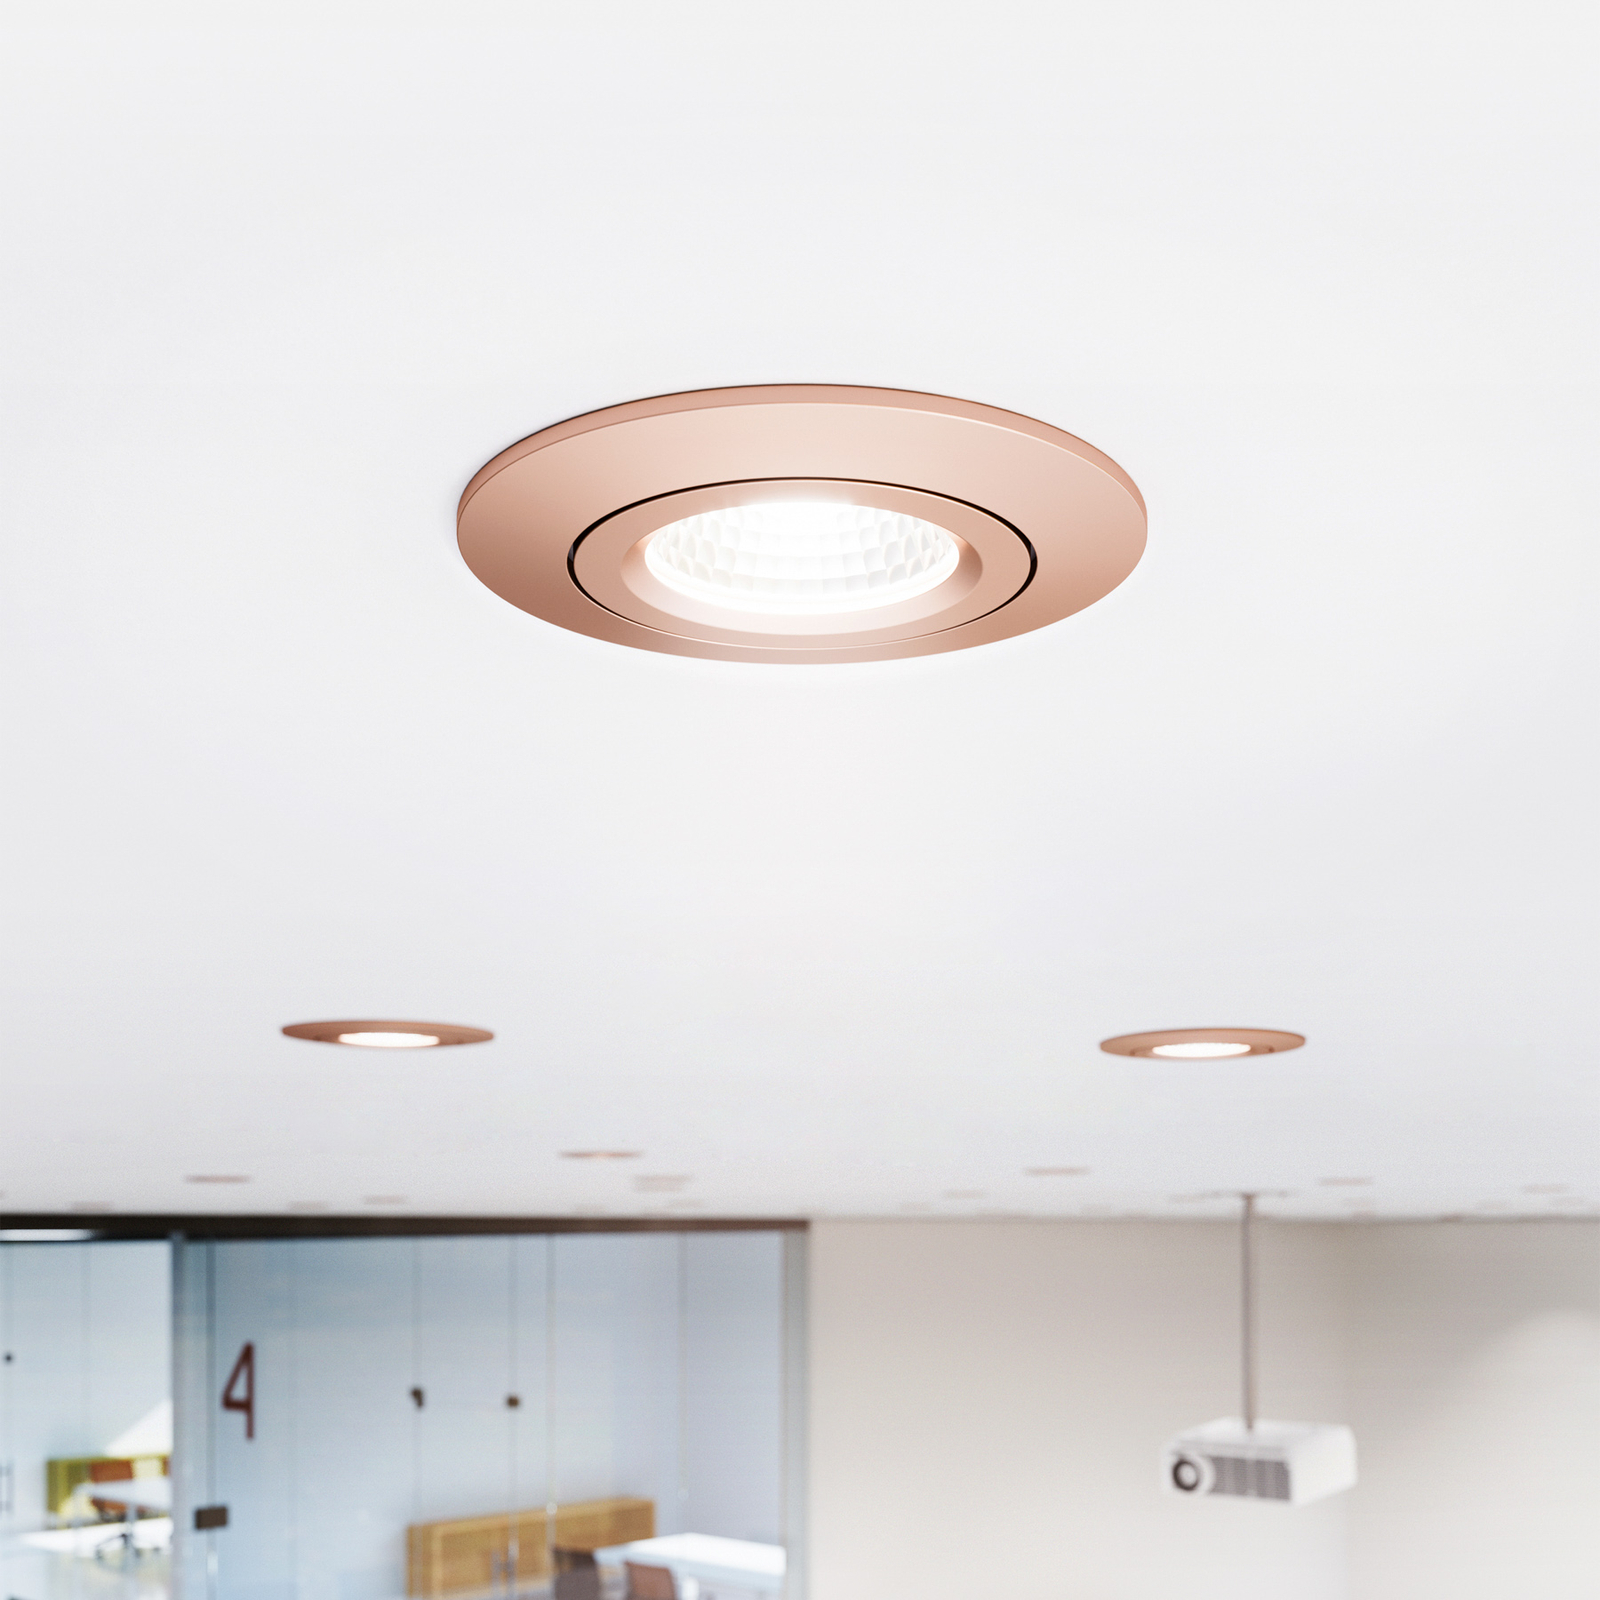 LED Spot à encastrer au plafond Diled, Ø 8,5 cm, 6 W, 3.000 K, rosé